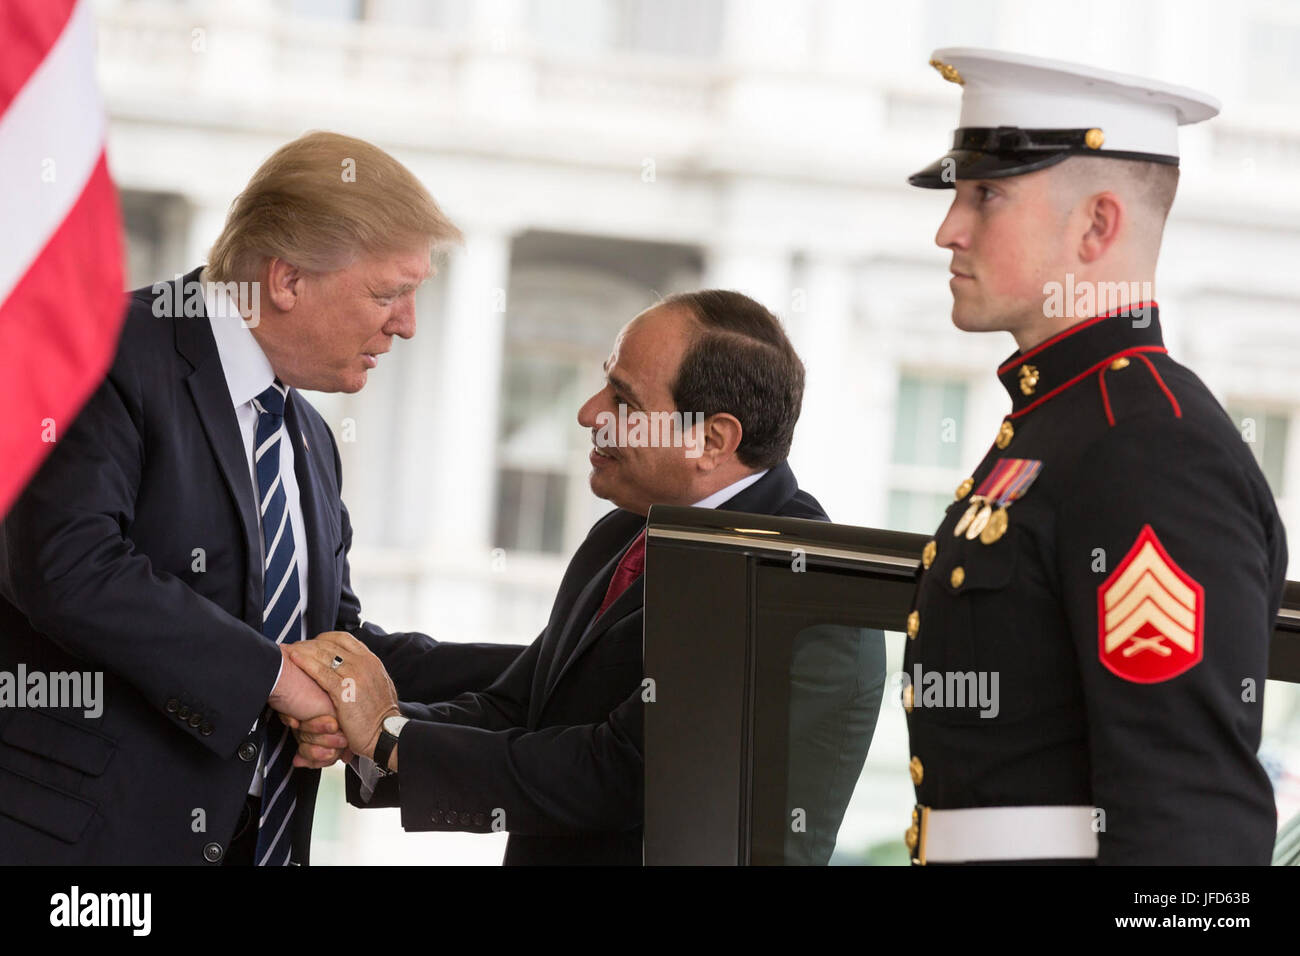 Le président Donald Trump se félicite le président égyptien Abdel Fattah al Sissi, le lundi 3 avril 2017, à l'entrée de l'aile ouest de la Maison Blanche à Washington, D.C. (Official White House Photo by Shealah Craighead) Banque D'Images